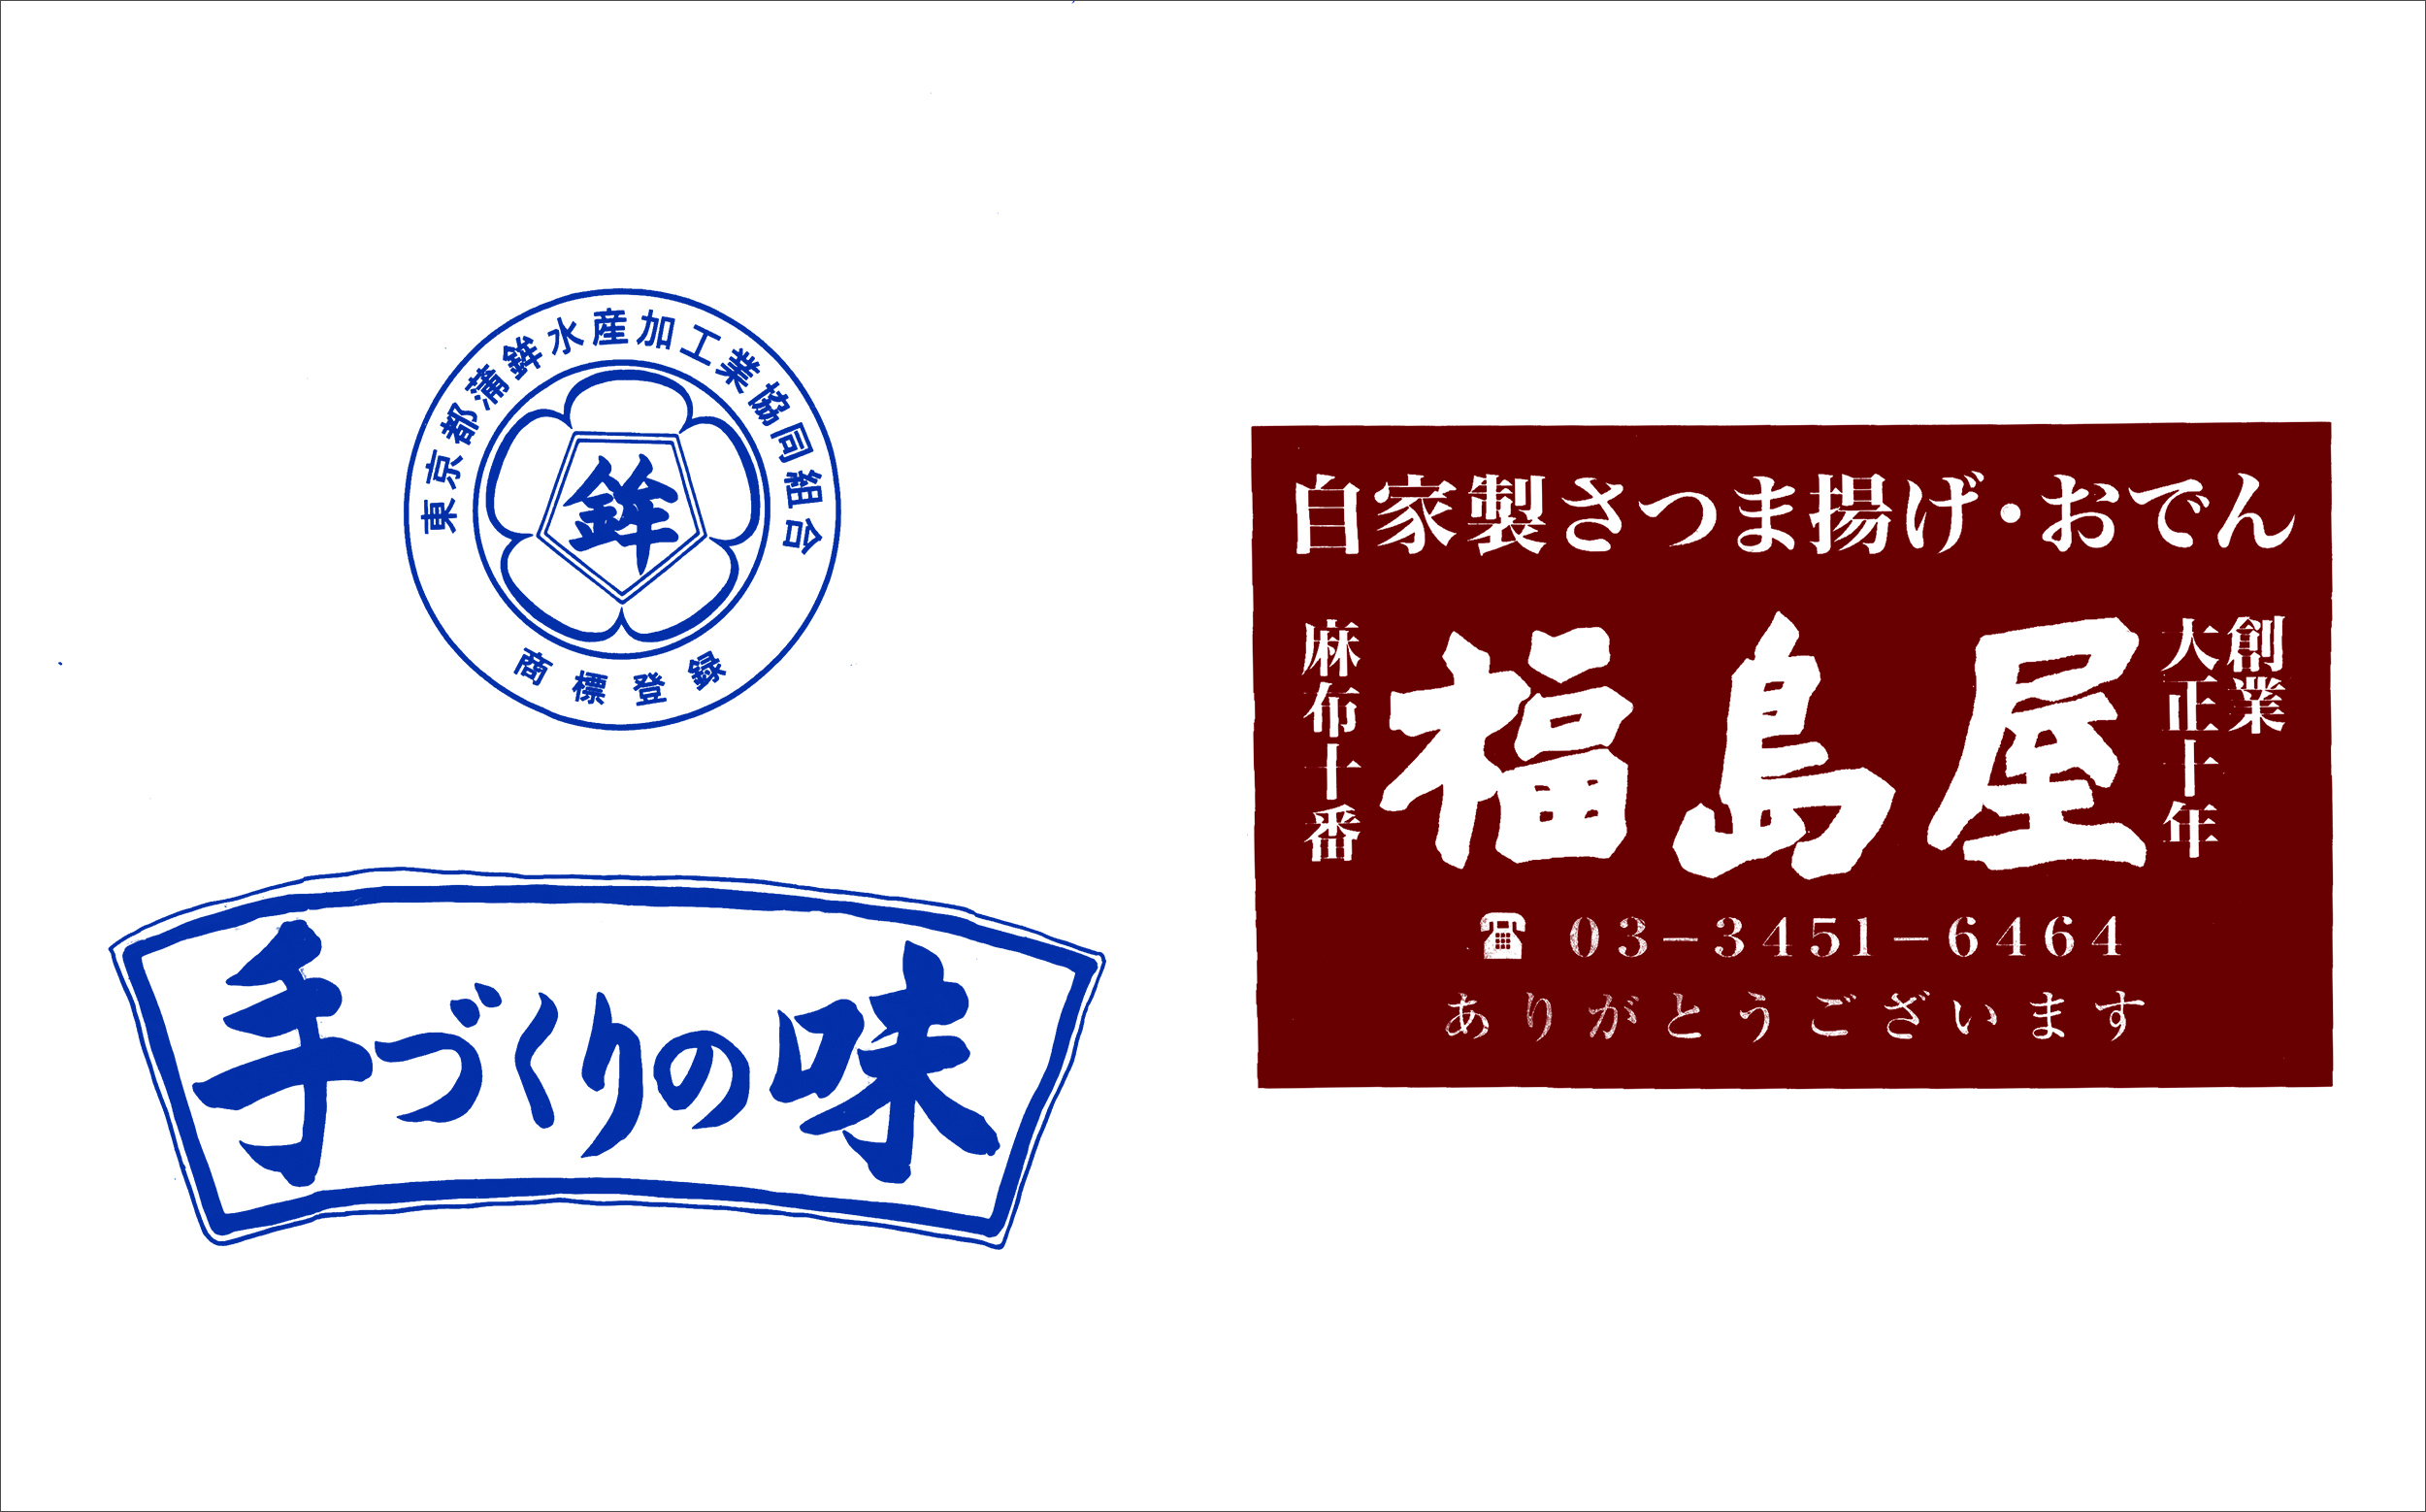 包装紙（ビニール袋）のデザイン：東京都蒲鉾水産加工業協同組合、福島屋